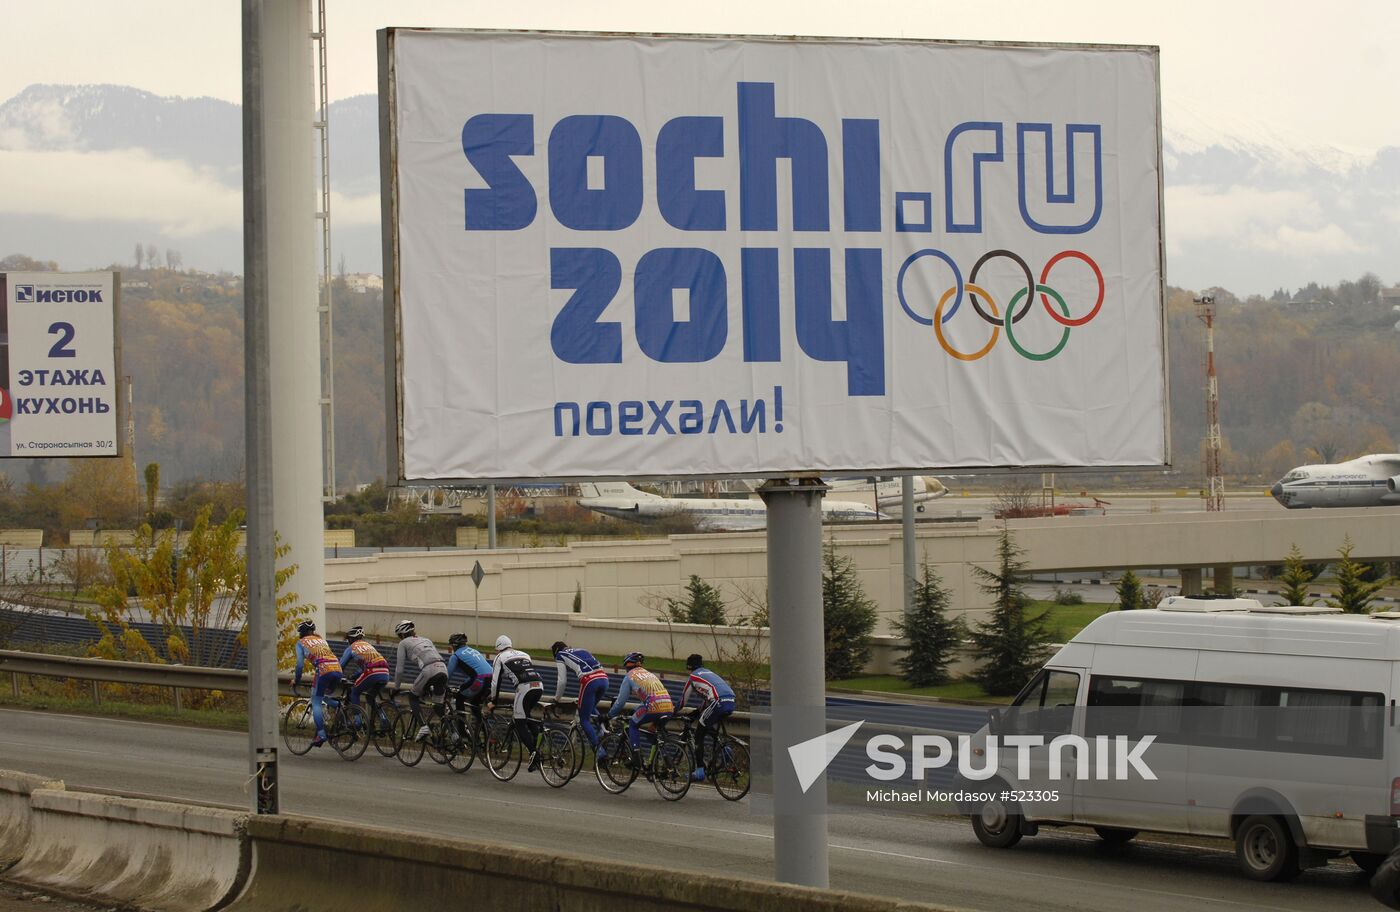 2014 Winter Olympiad logo in Sochi